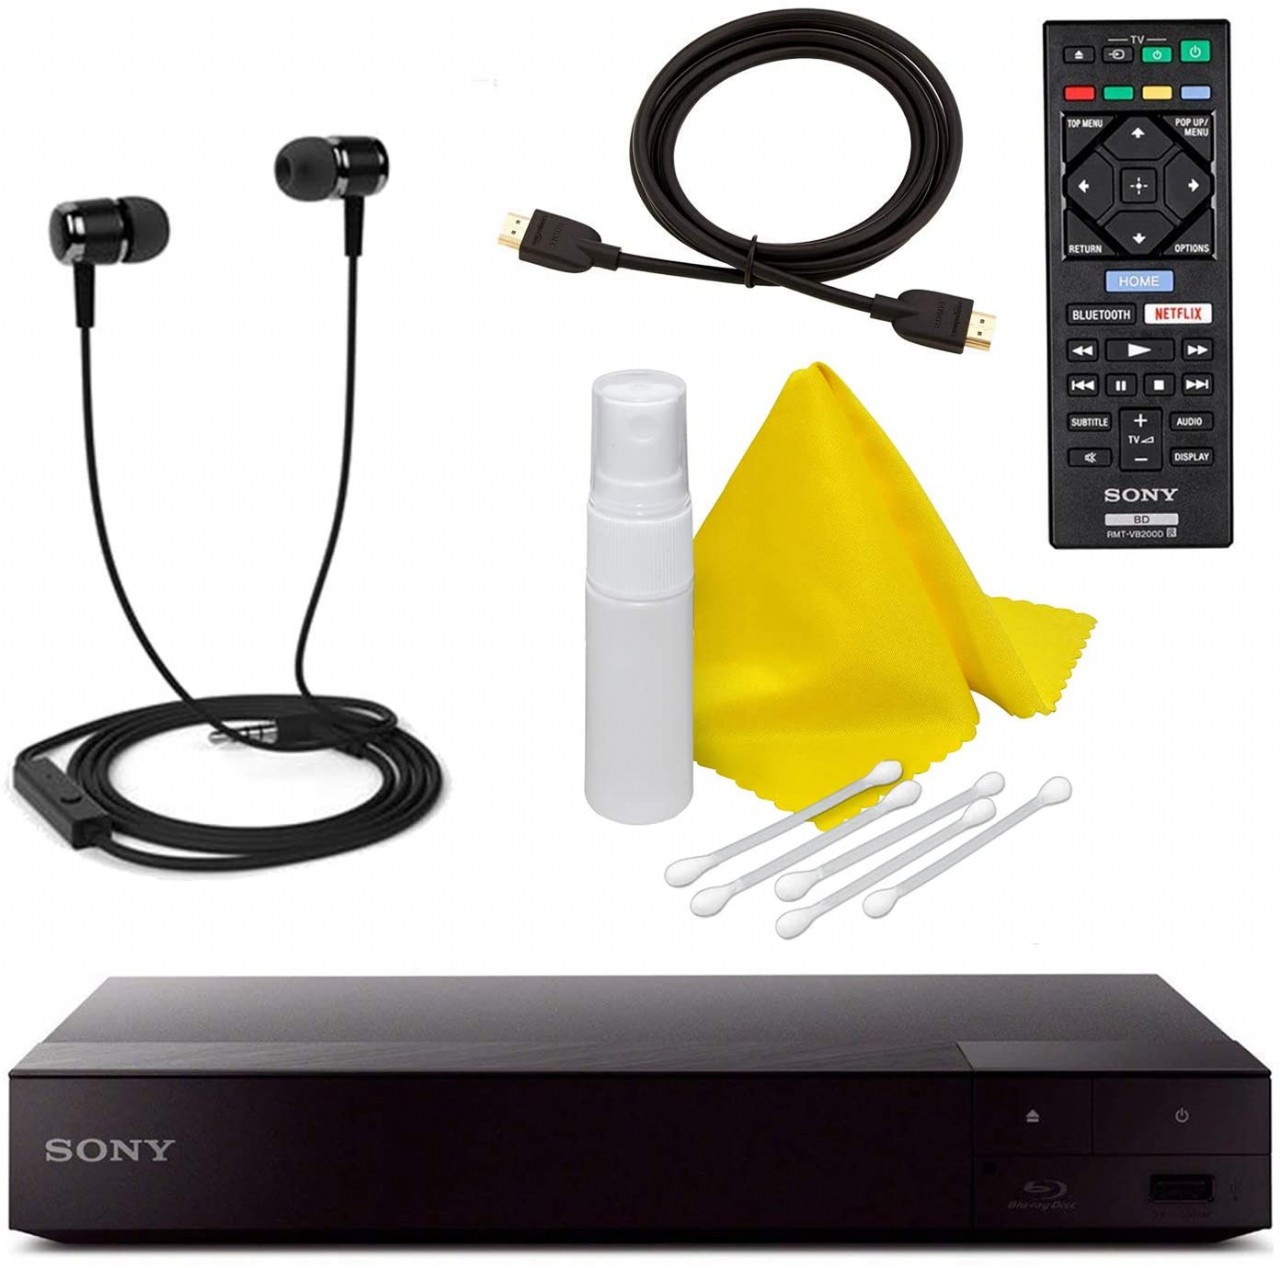 Sony S6700 - Reproductor de Blu-ray 4K con Wi-Fi y mando a distancia, incluye kit de mantenimiento